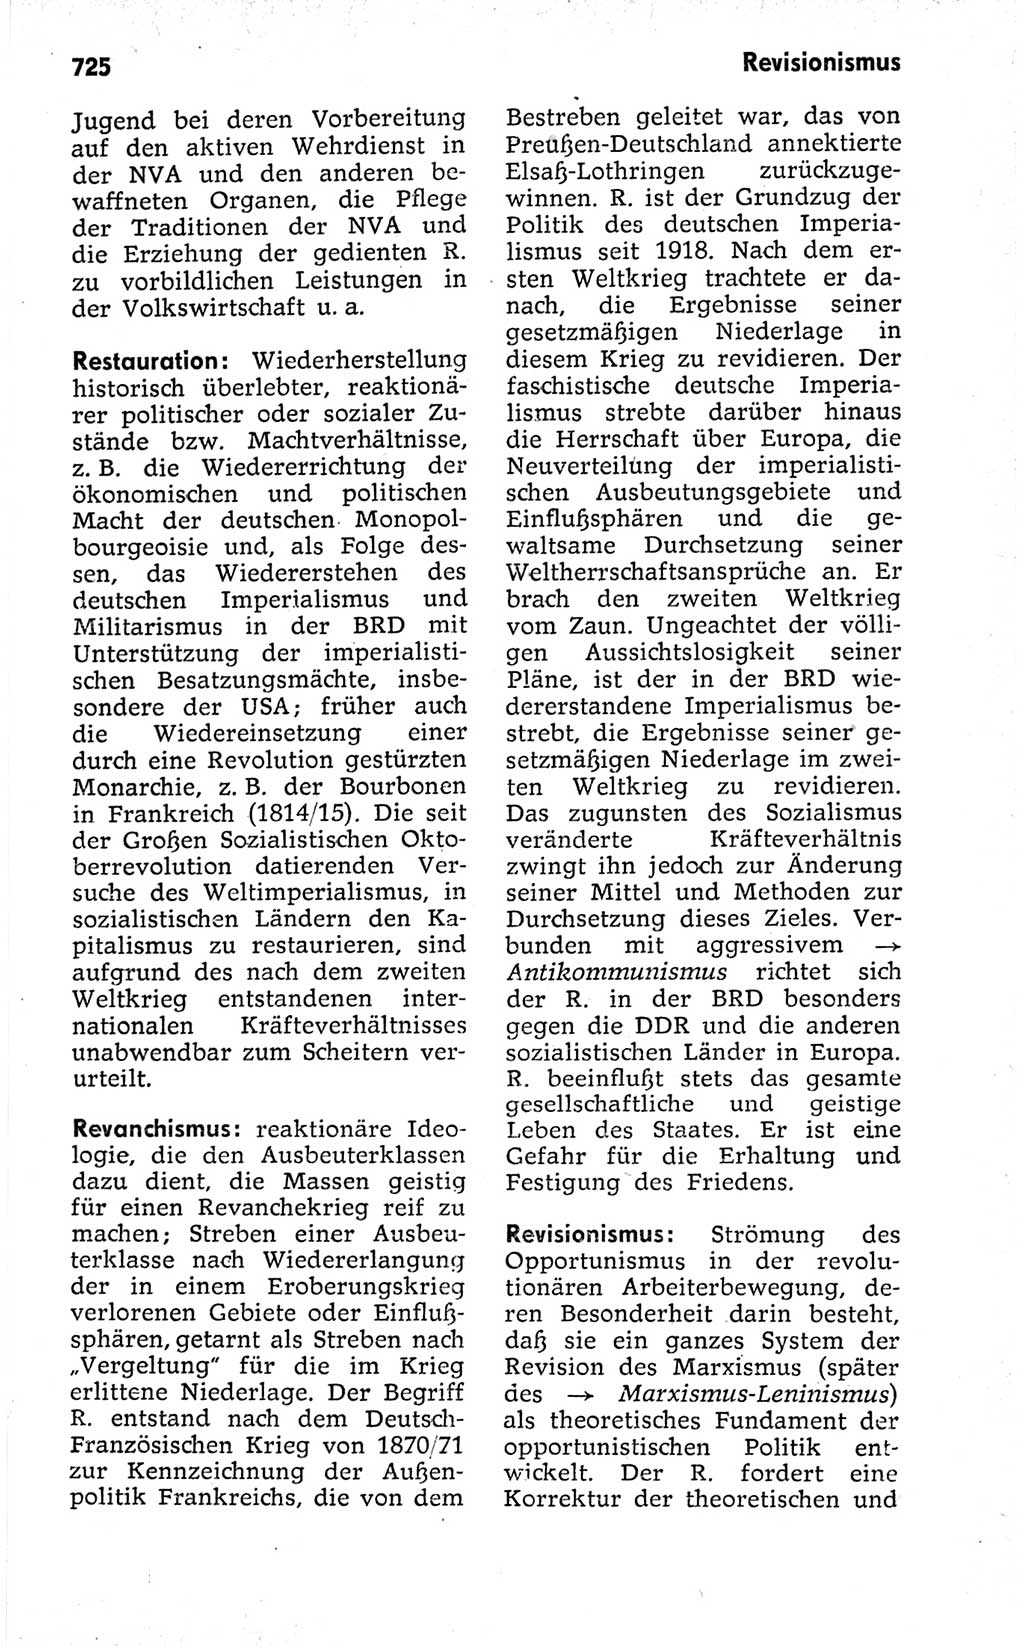 Kleines politisches Wörterbuch [Deutsche Demokratische Republik (DDR)] 1973, Seite 725 (Kl. pol. Wb. DDR 1973, S. 725)